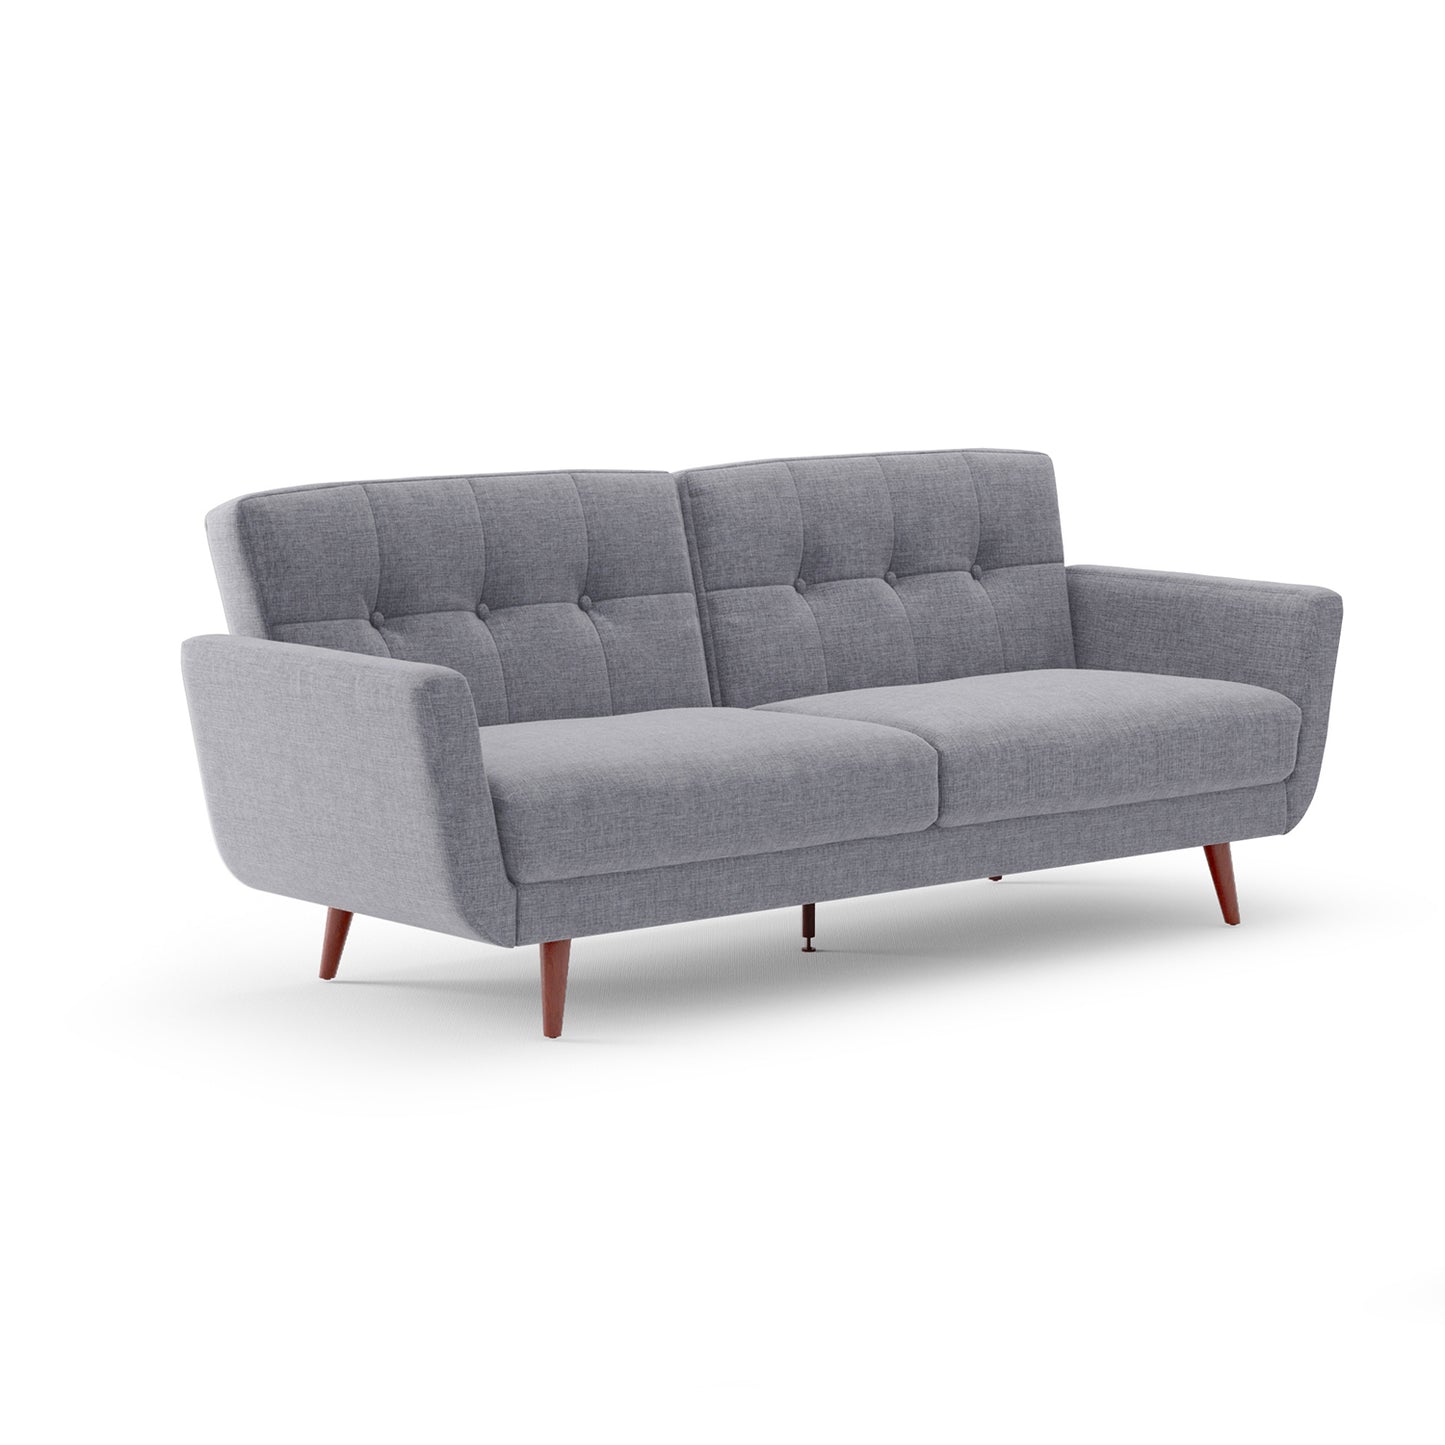 Aeon Nancy Converitble Sofa | Sofas |Modishstore